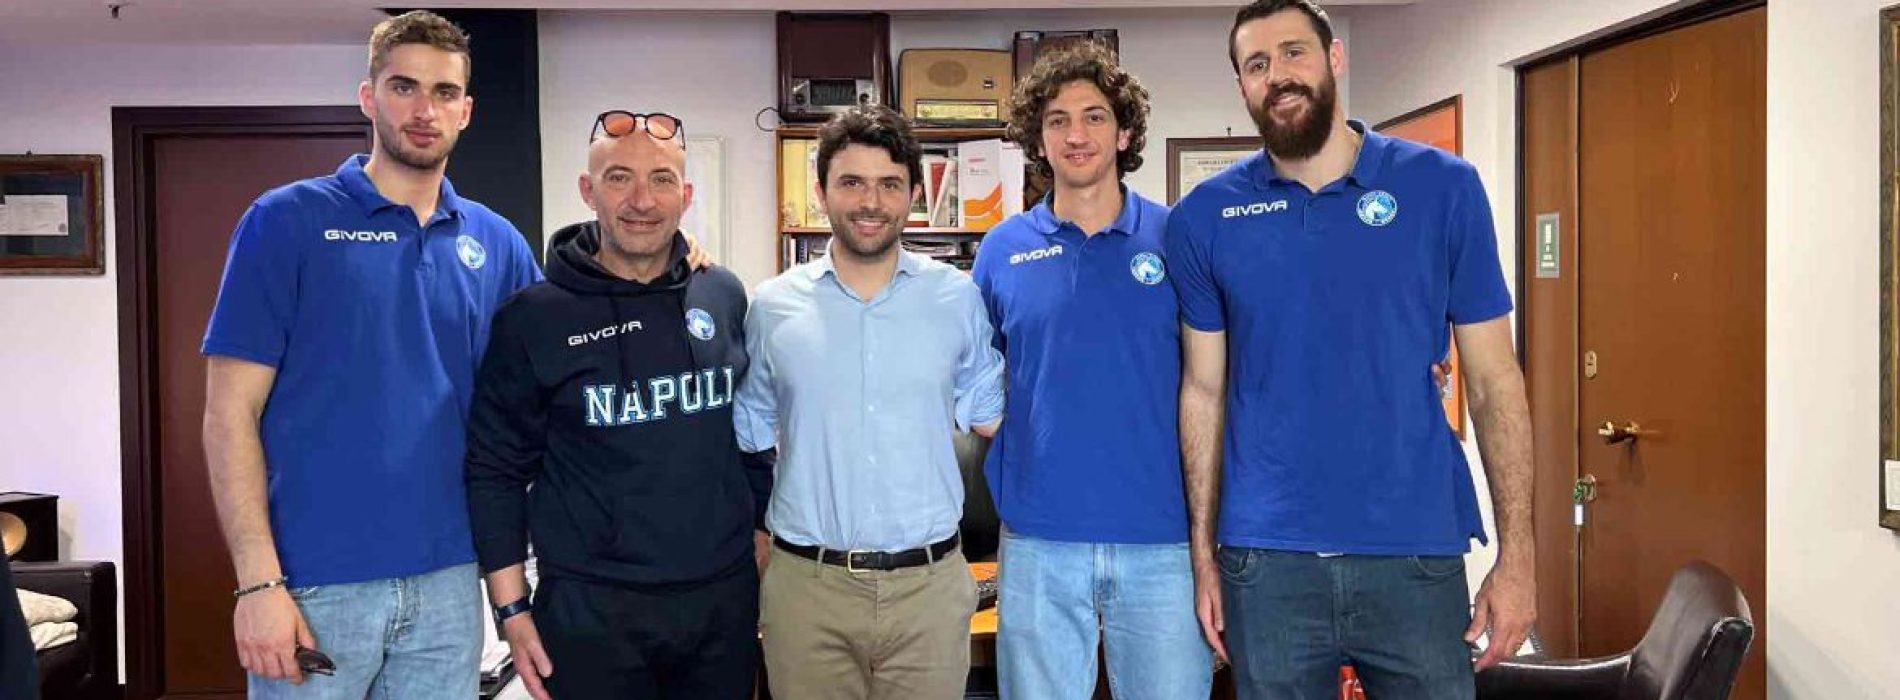 La Gevi Napoli Basket festeggia la salvezza: “Questo gruppo non ha mai mollato”